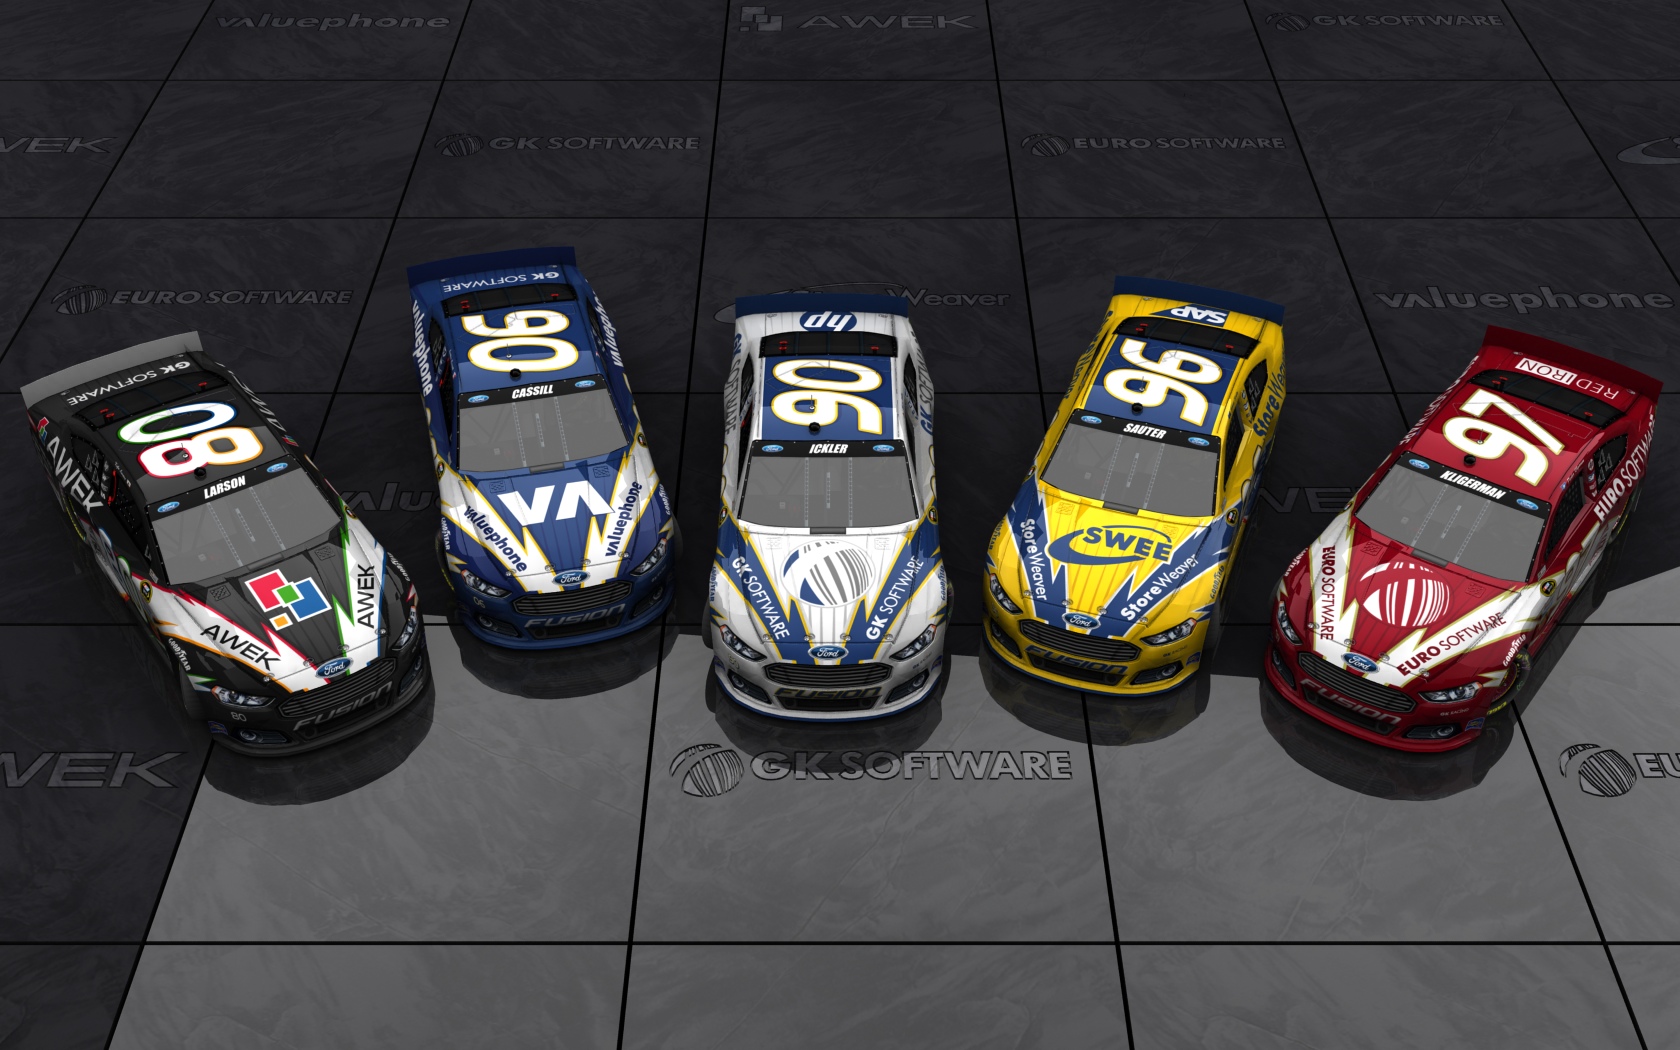 2013 GK Racing, Alle fünf Fahrzeuge (Blick erhöht von vorn)